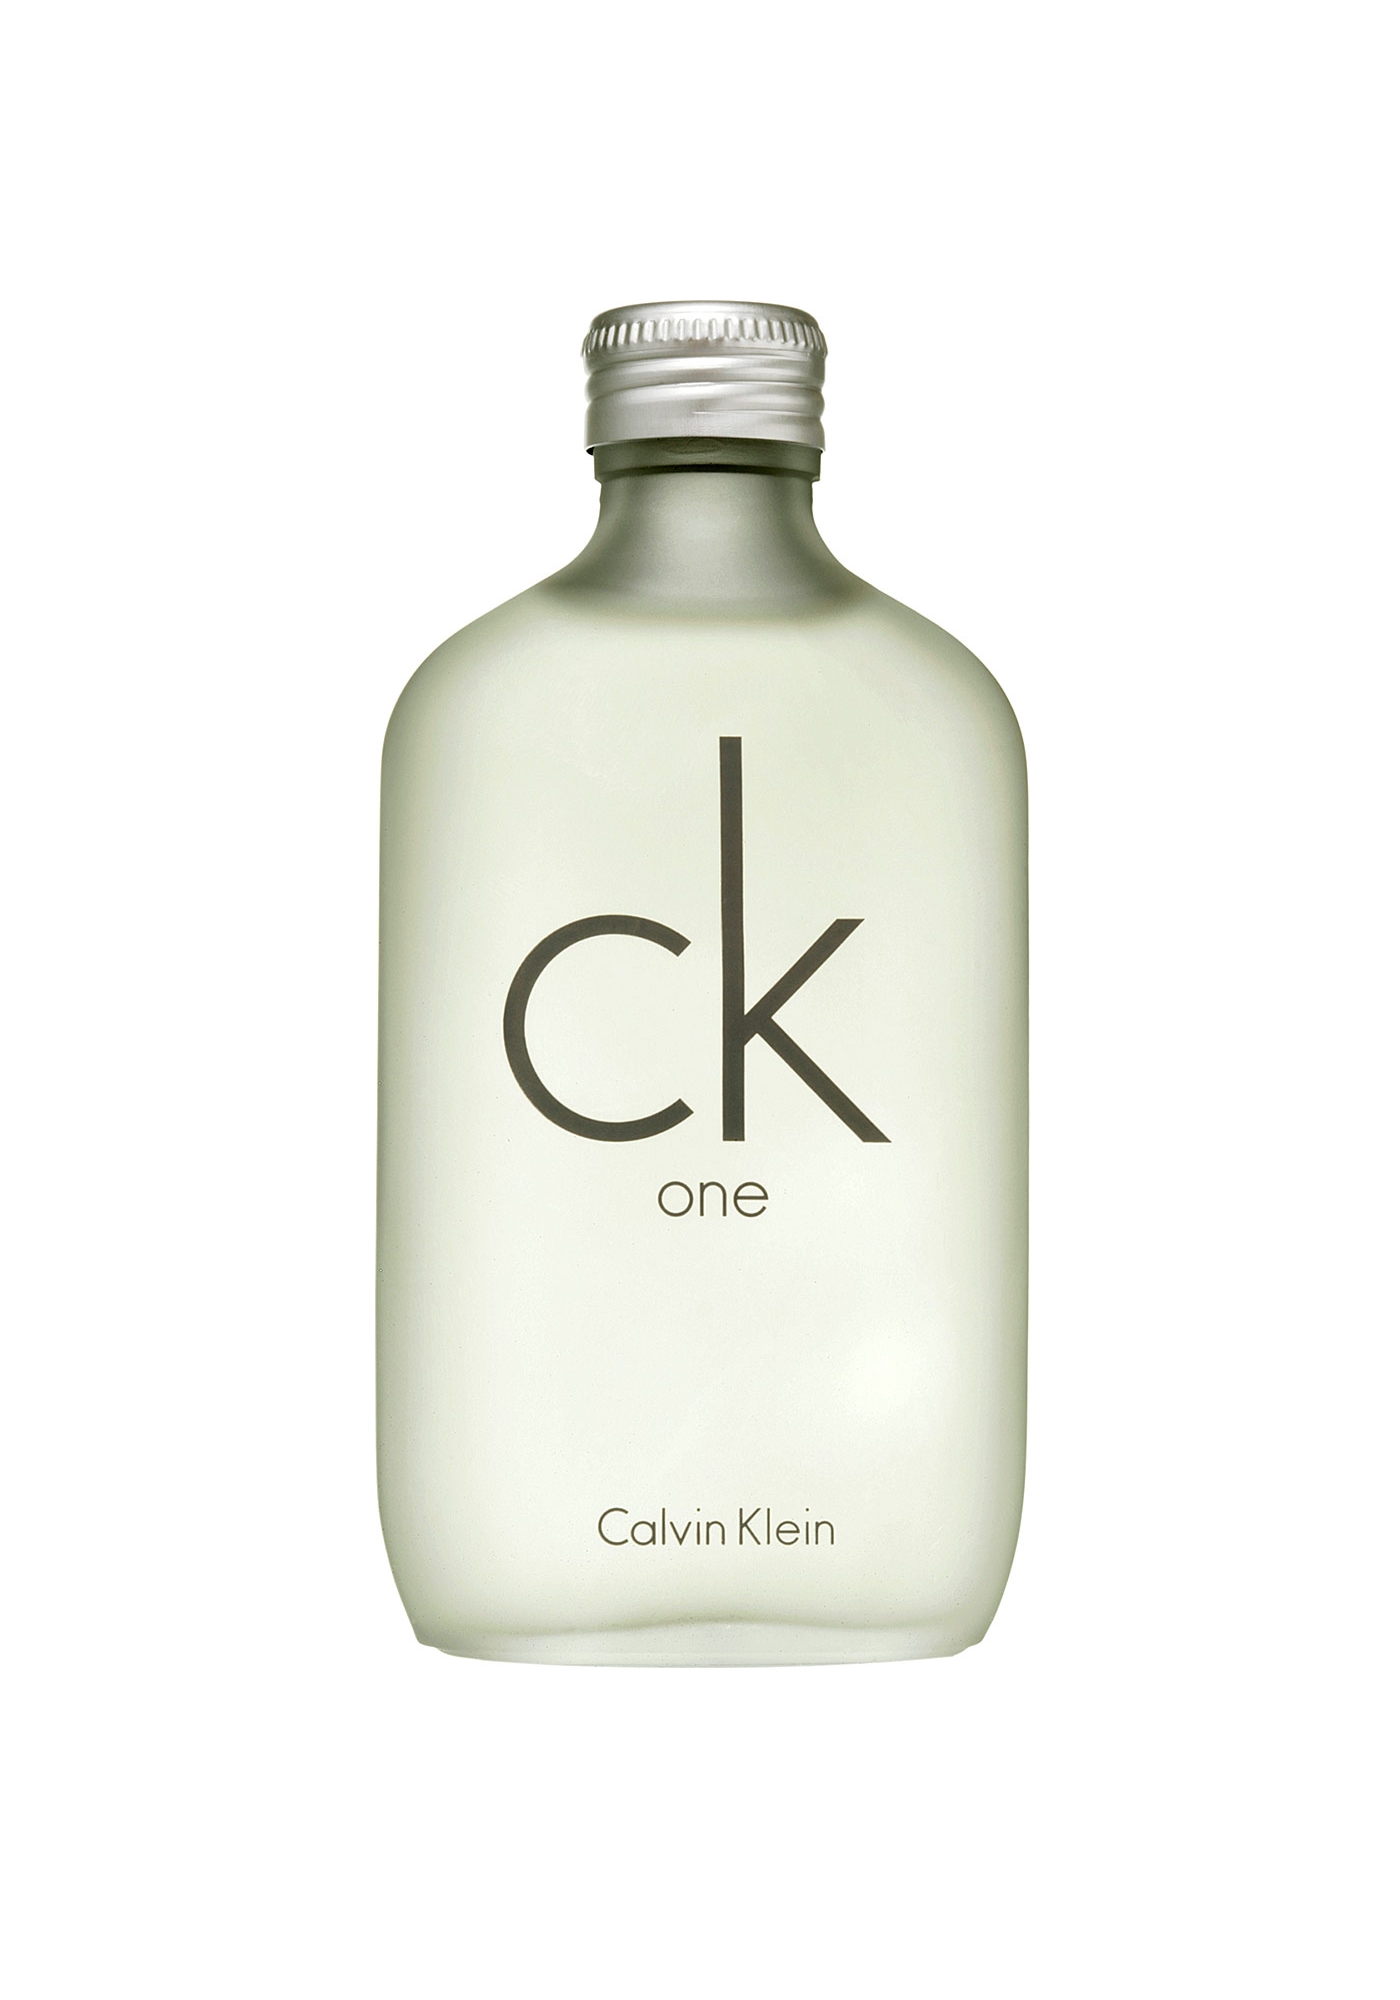 burgemeester driehoek toewijzing Heren Parfum, Calvin Klein "CK One", Eau de Toilette 50ml...